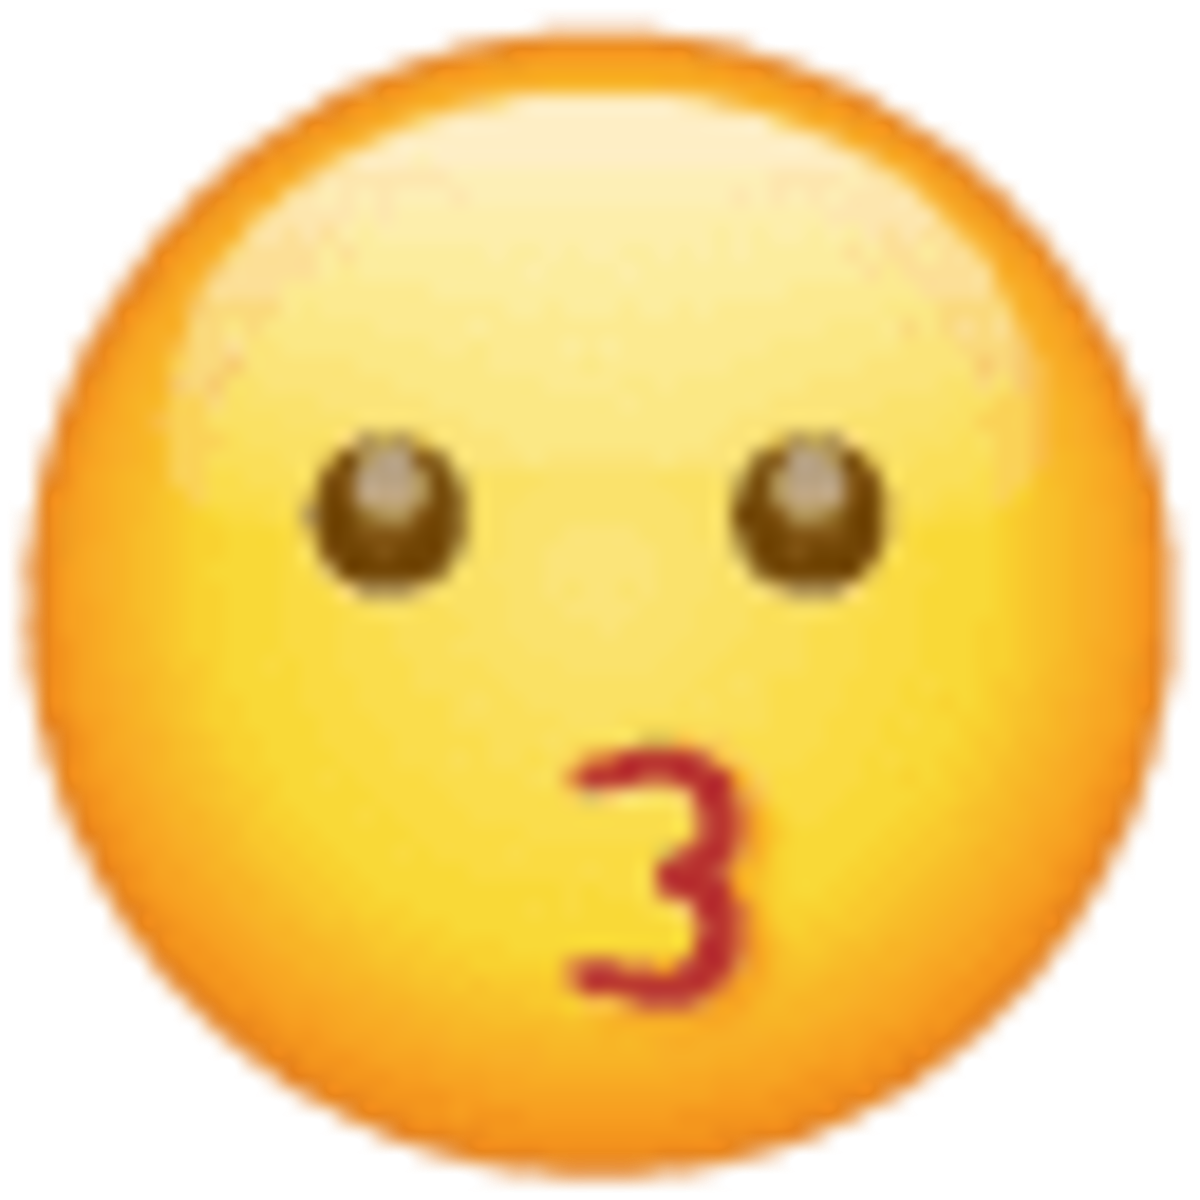 Emoji 1f617, cara besando